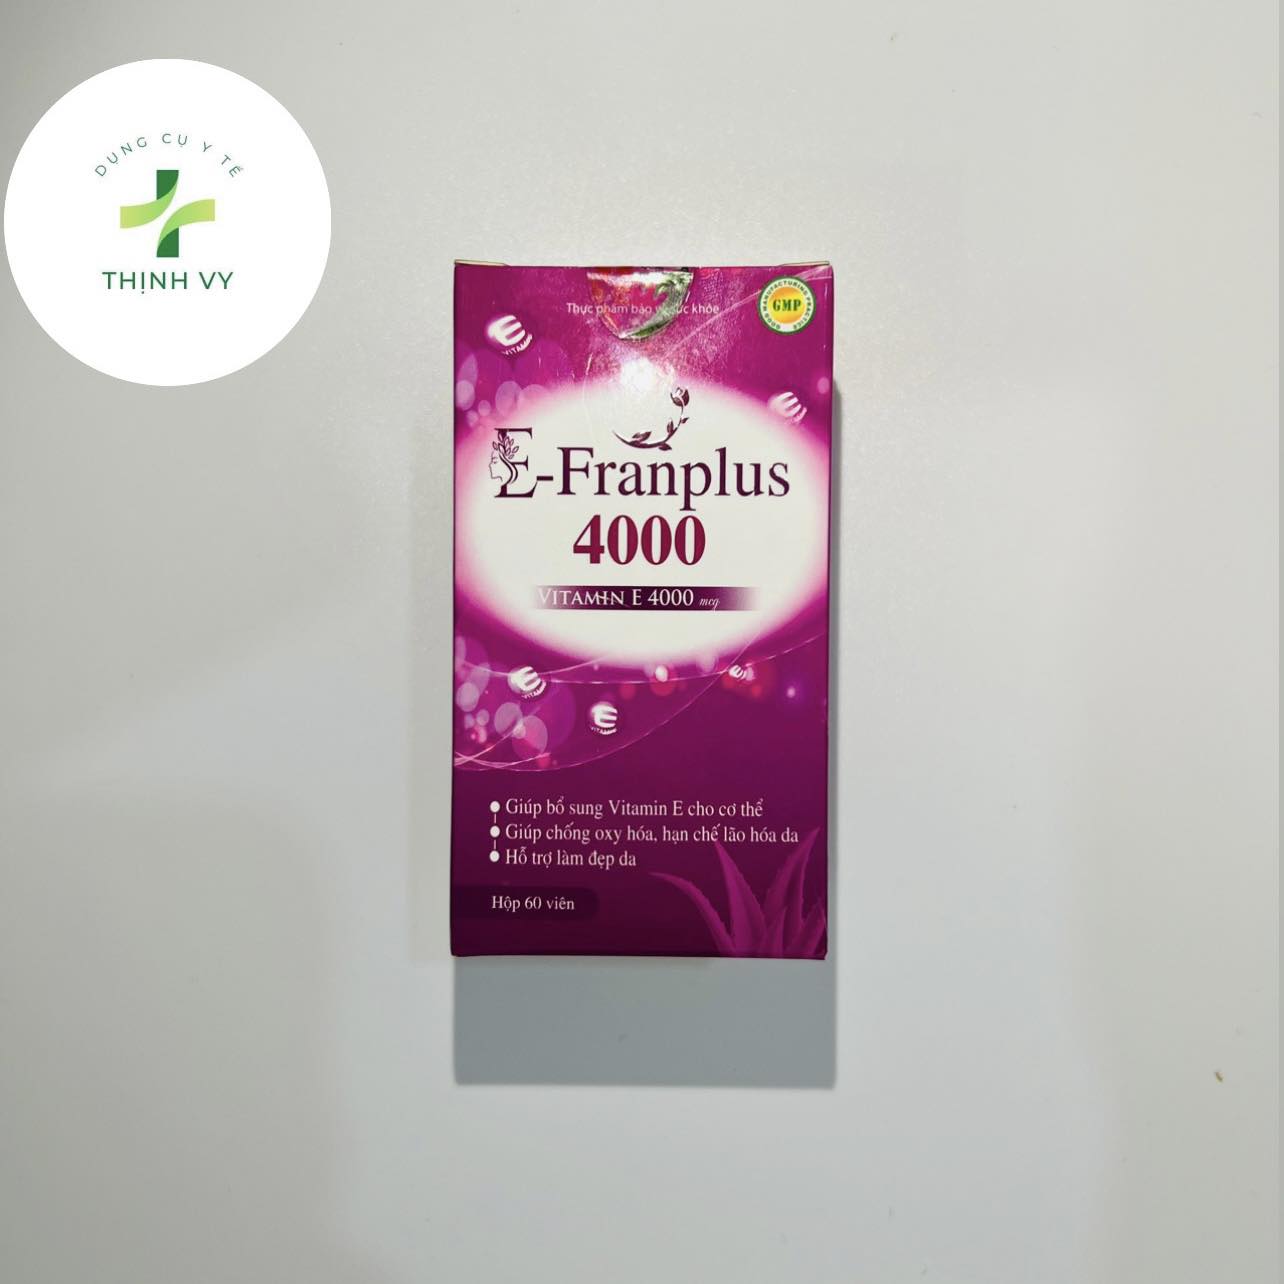 E - Franplus 4000 Viên Uống Bổ Sung Vitamin E Chiết Xuất Từ Lô Hội Chống Oxy Hóa, Chống Lão Hóa Da Hộp 60 Viên